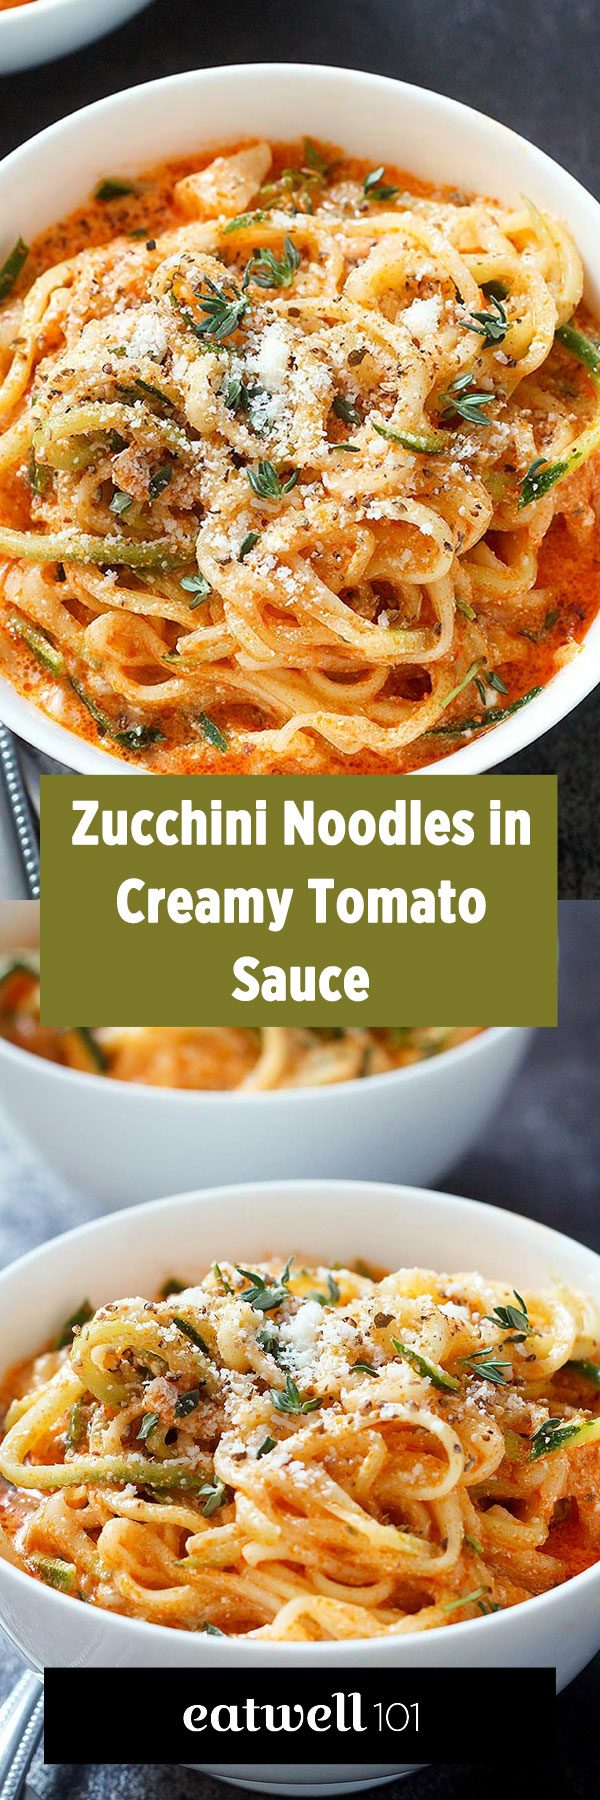 Zucchini Noodles in Creamy Tomato Sauce Recipe Eatwell101